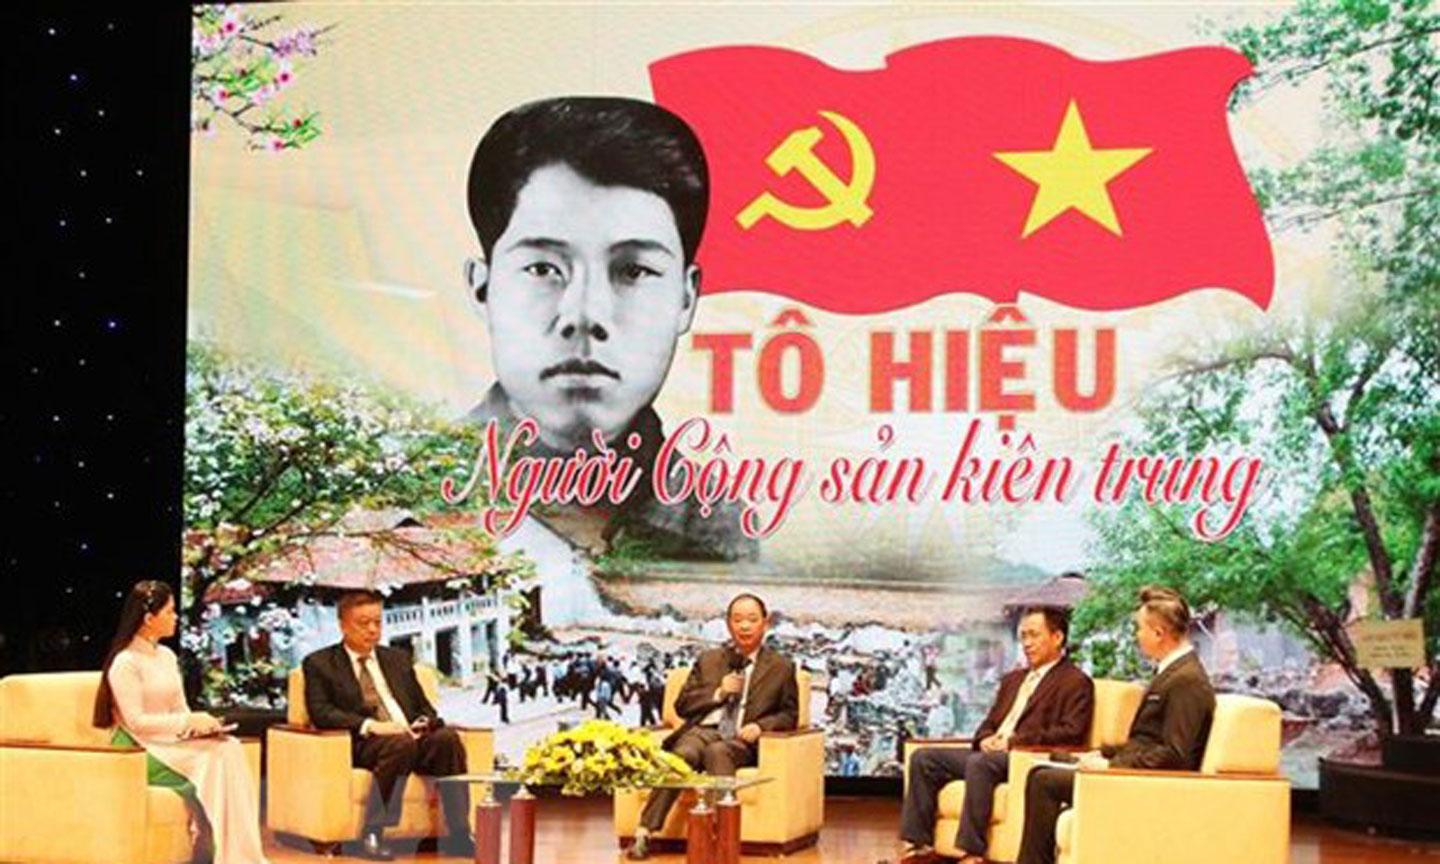 Quang cảnh buổi Tọa đàm “Tô Hiệu - Người cộng sản kiên trung” vừa được Tỉnh ủy Sơn La tổ chức nhân dịp kỷ niệm 110 năm ngày sinh của đồng chí.